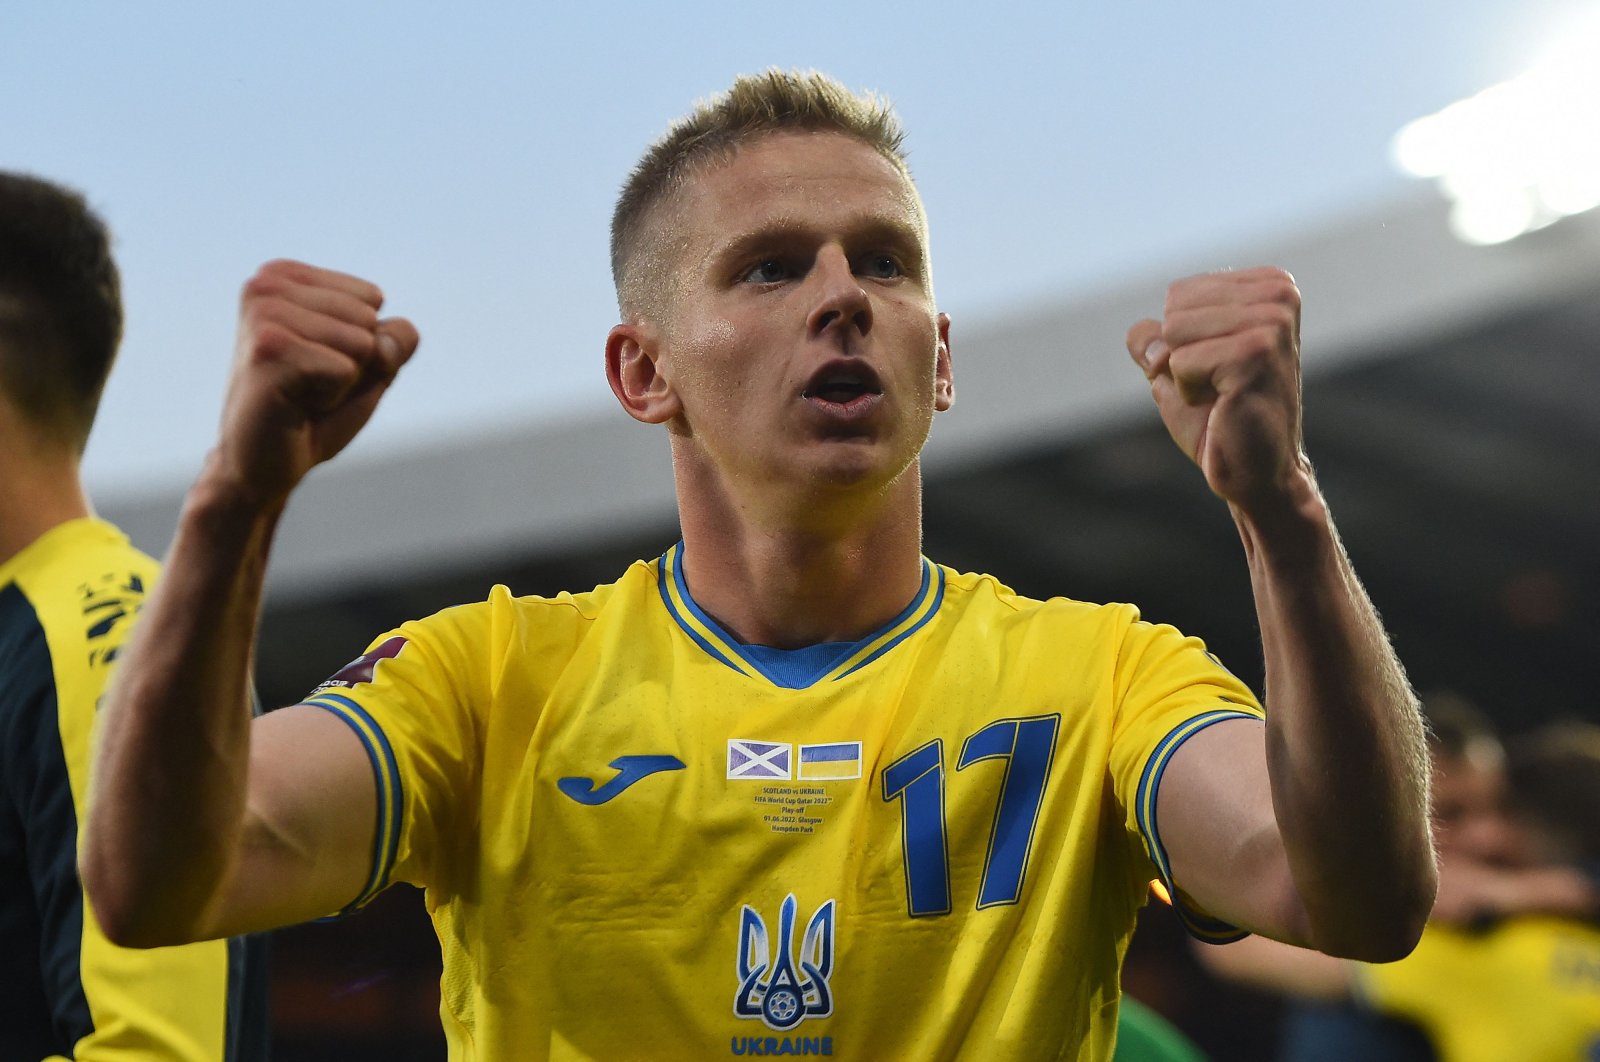 Zelenskyy memuji kemenangan playoff Piala Dunia Ukraina atas Skotlandia